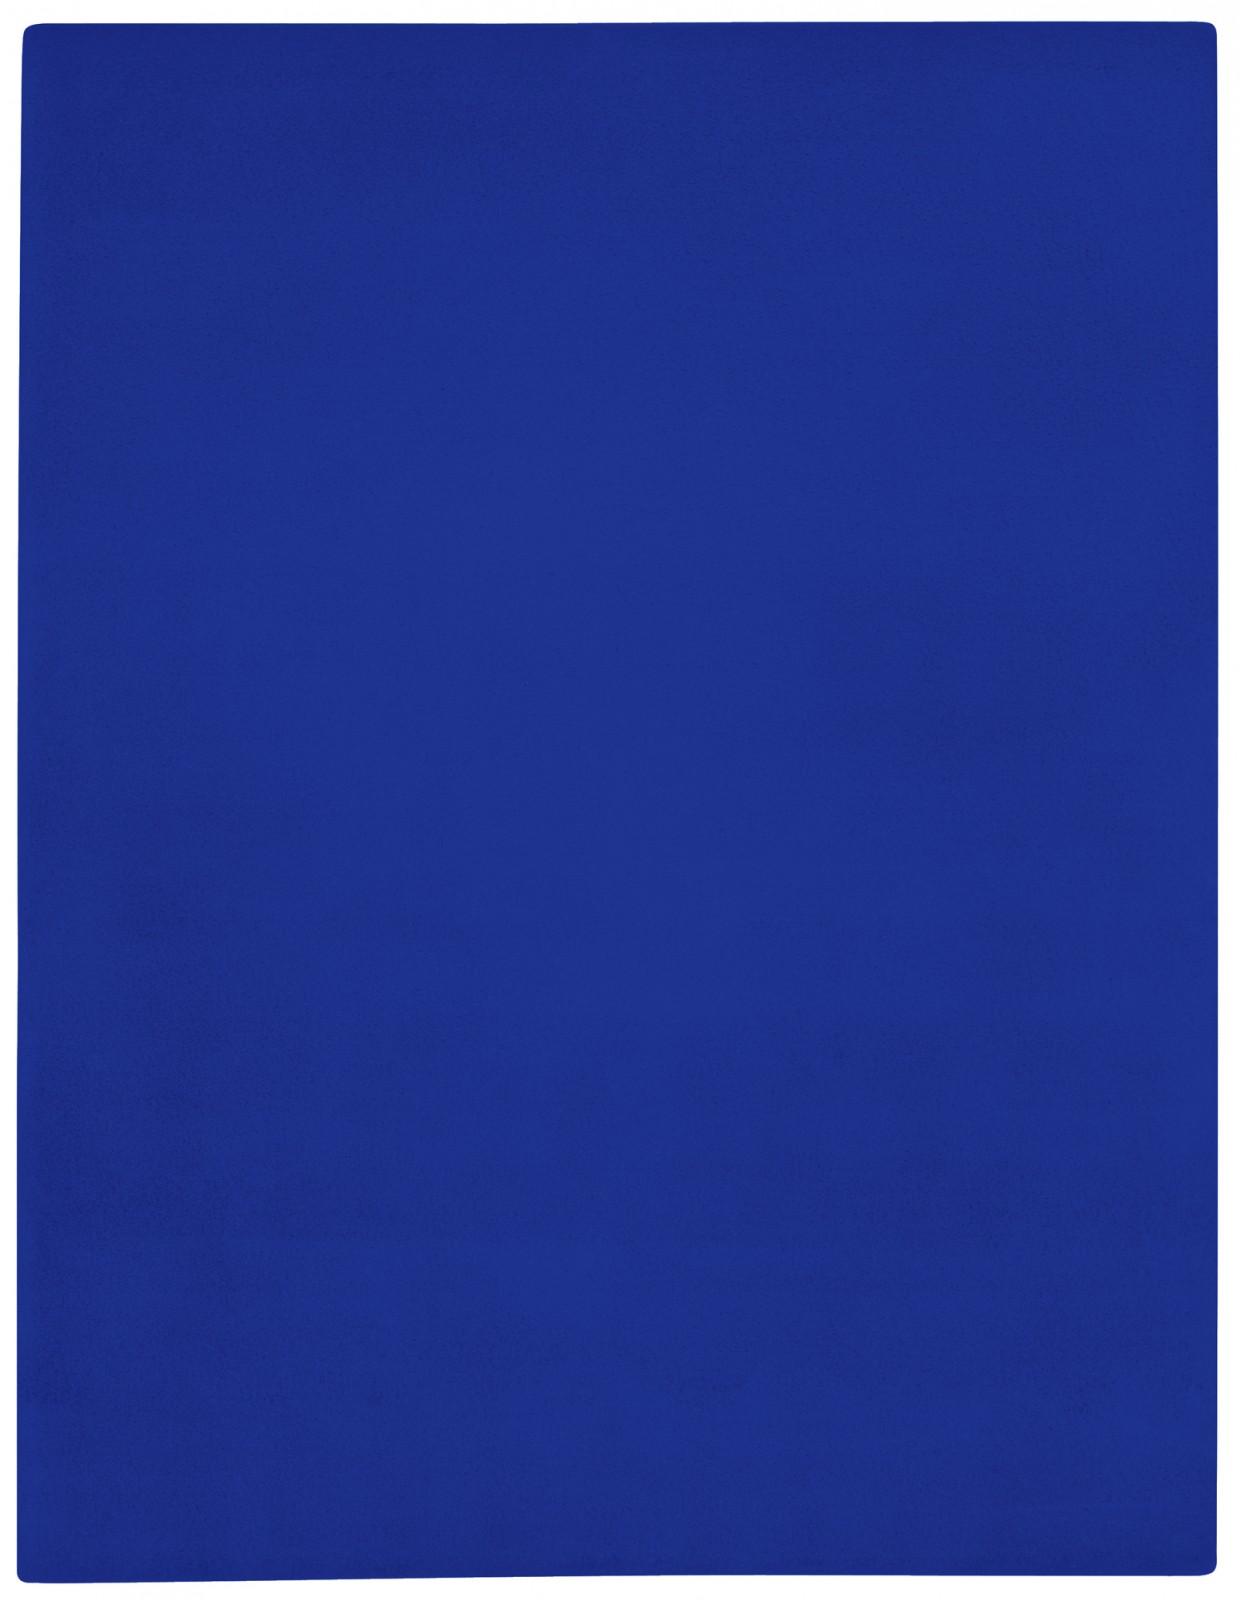 Untitled Blue Monochrome (IKB 3), 1960. Source: Klein, “Untitled Blue Monochrome (IKB 3).”